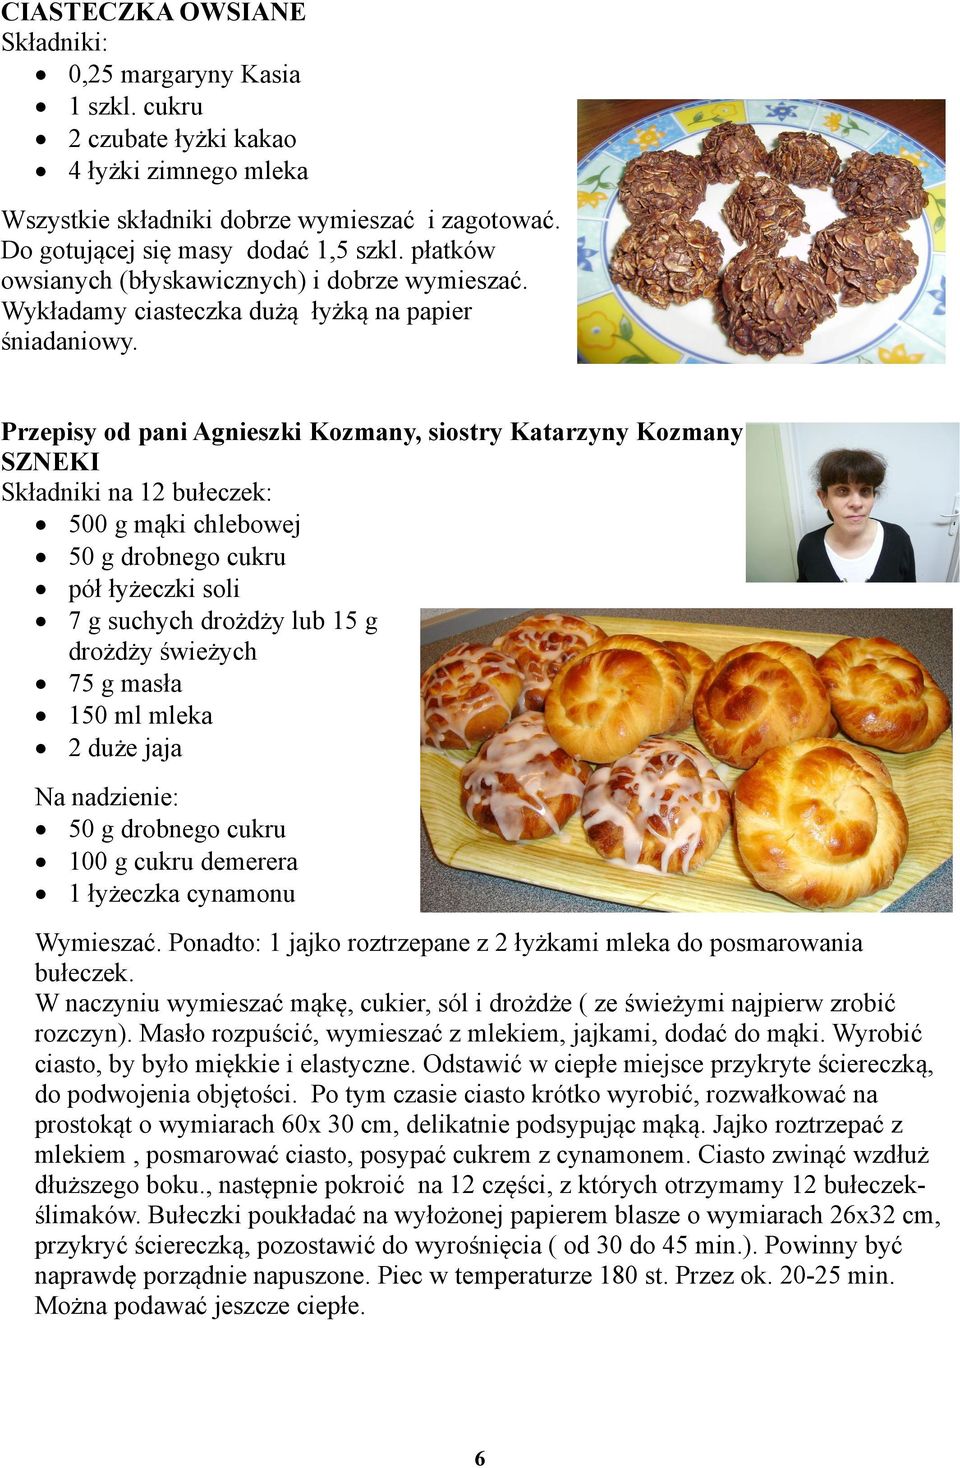 Przepisy od pani Agnieszki Kozmany, siostry Katarzyny Kozmany SZNEKI Składniki na 12 bułeczek: 500 g mąki chlebowej 50 g drobnego cukru pół łyżeczki soli 7 g suchych drożdży lub 15 g drożdży świeżych